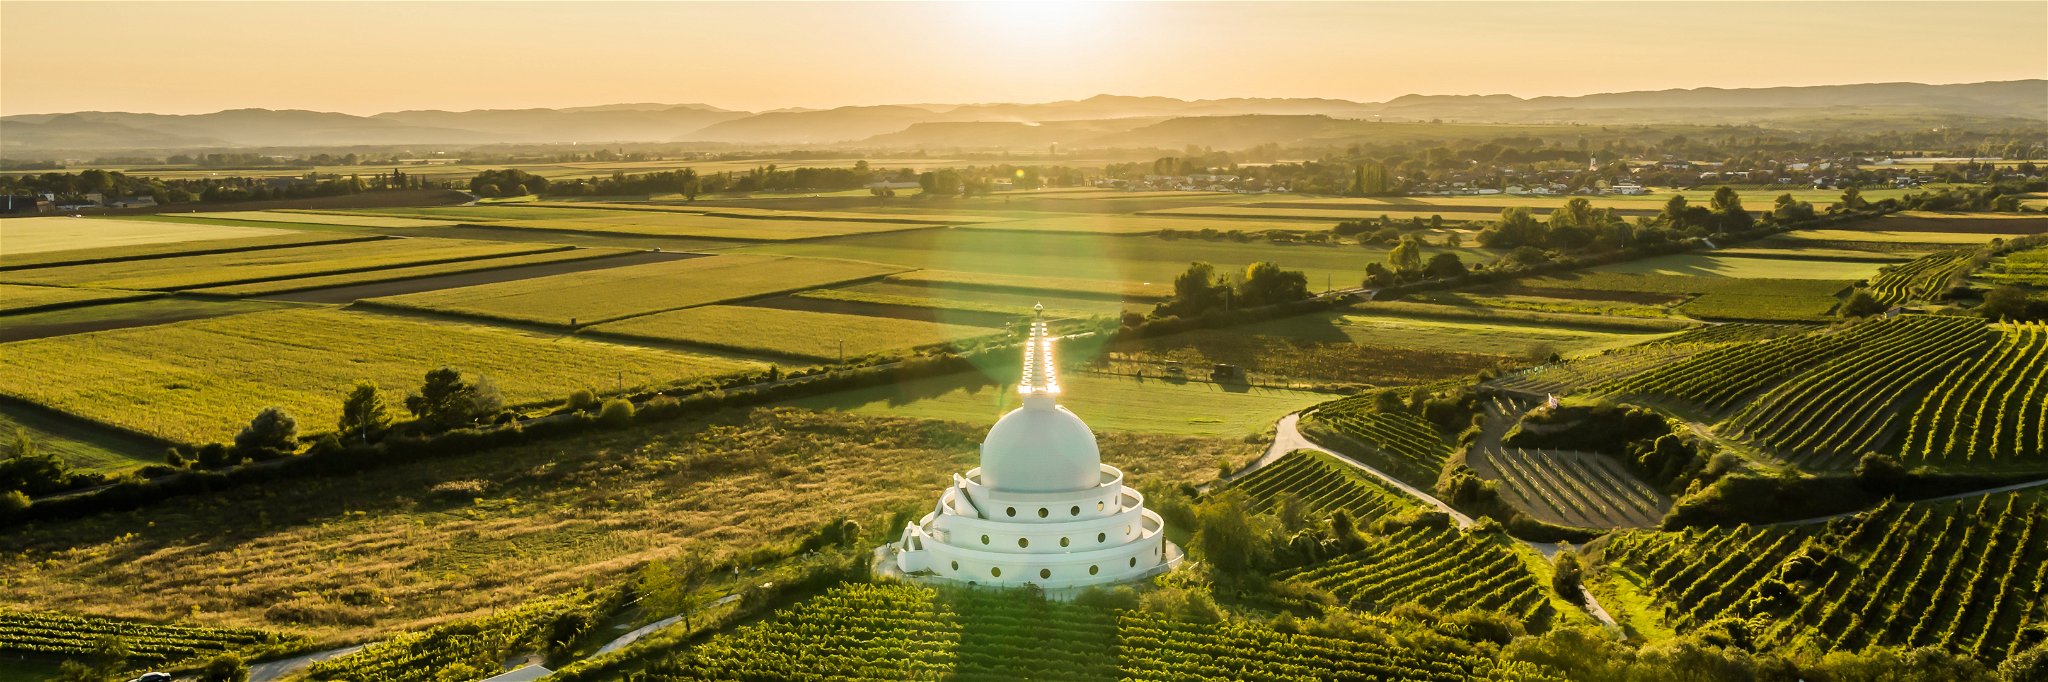 Meterhoch geschichteter Lössboden ist die Basis für die eleganten Wagramer Weine. Die Stupa bei Feuersbrunn ist eine weithin sichtbare Landmarke der Weinbauregion.